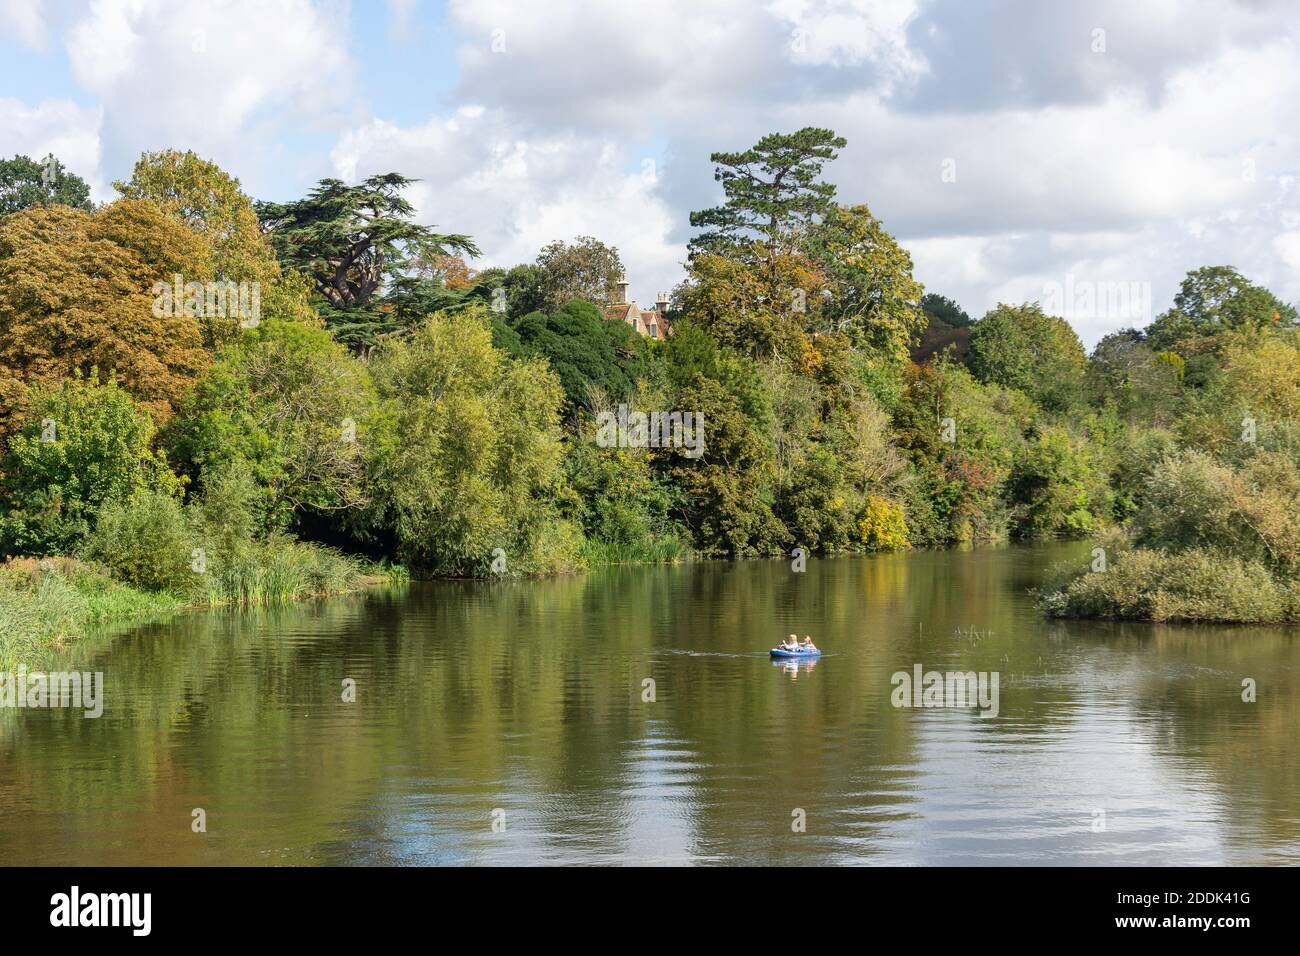 Rivière Thames en automne depuis le pont Clifton Hampden, Clifton Hampden, Oxfordshire, Angleterre, Royaume-Uni Banque D'Images